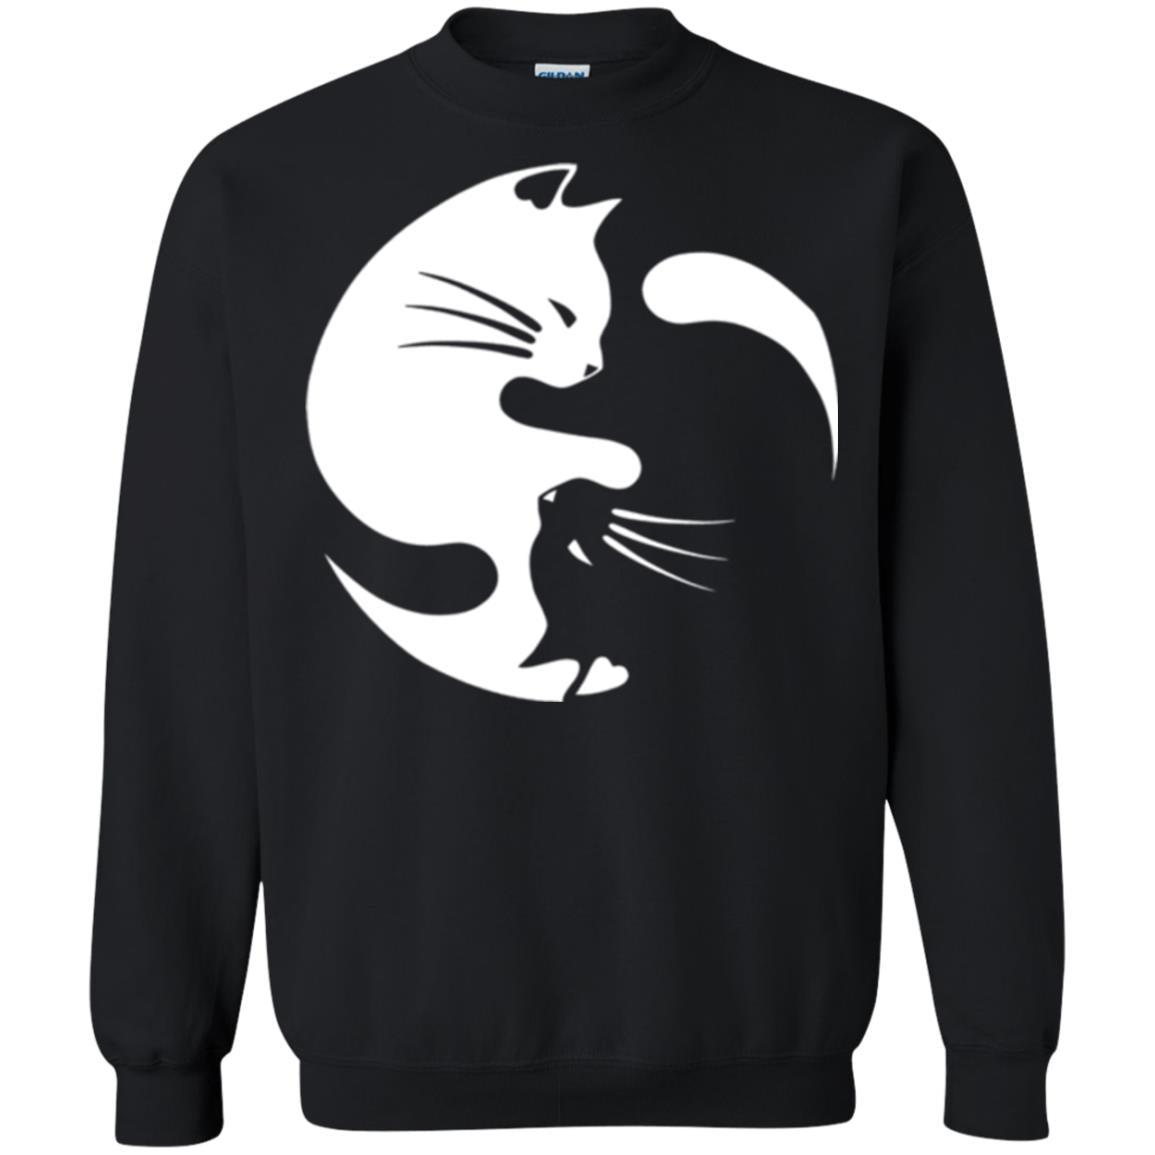 Ying Yang Cat T-shirt